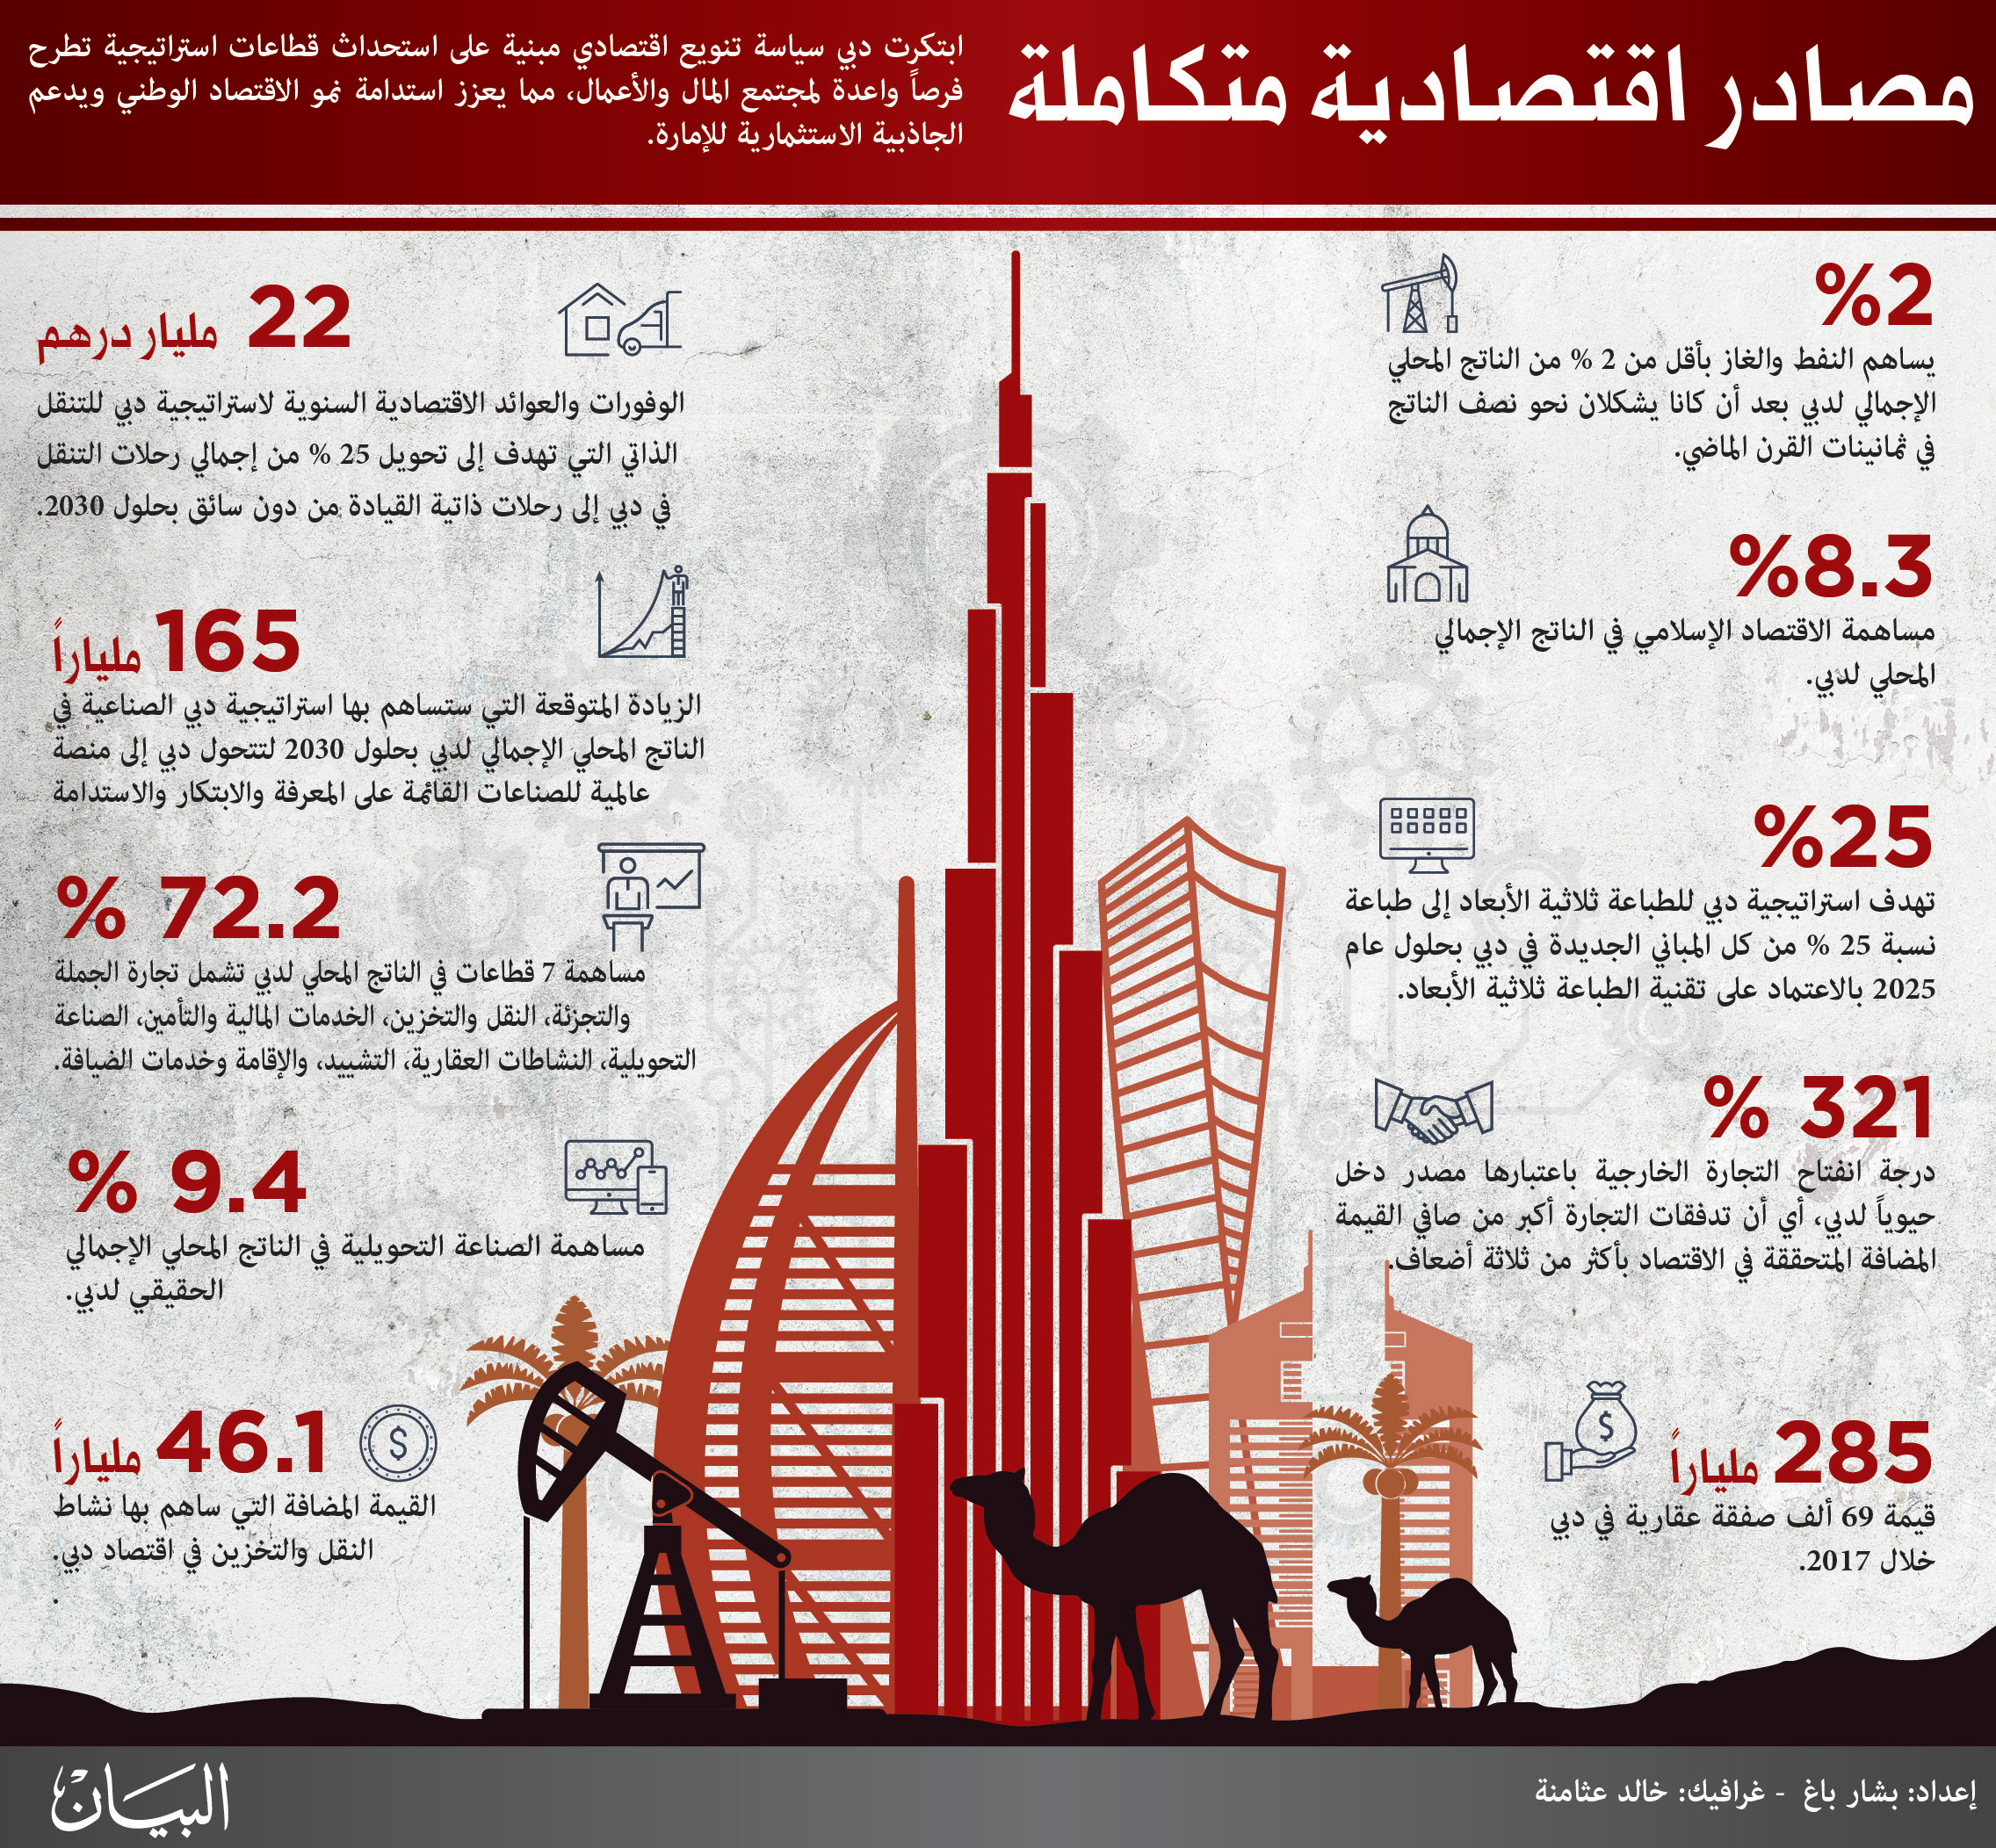 التحديات التي تواجه مشروعات التشييد في الإمارات العربية المتحدة